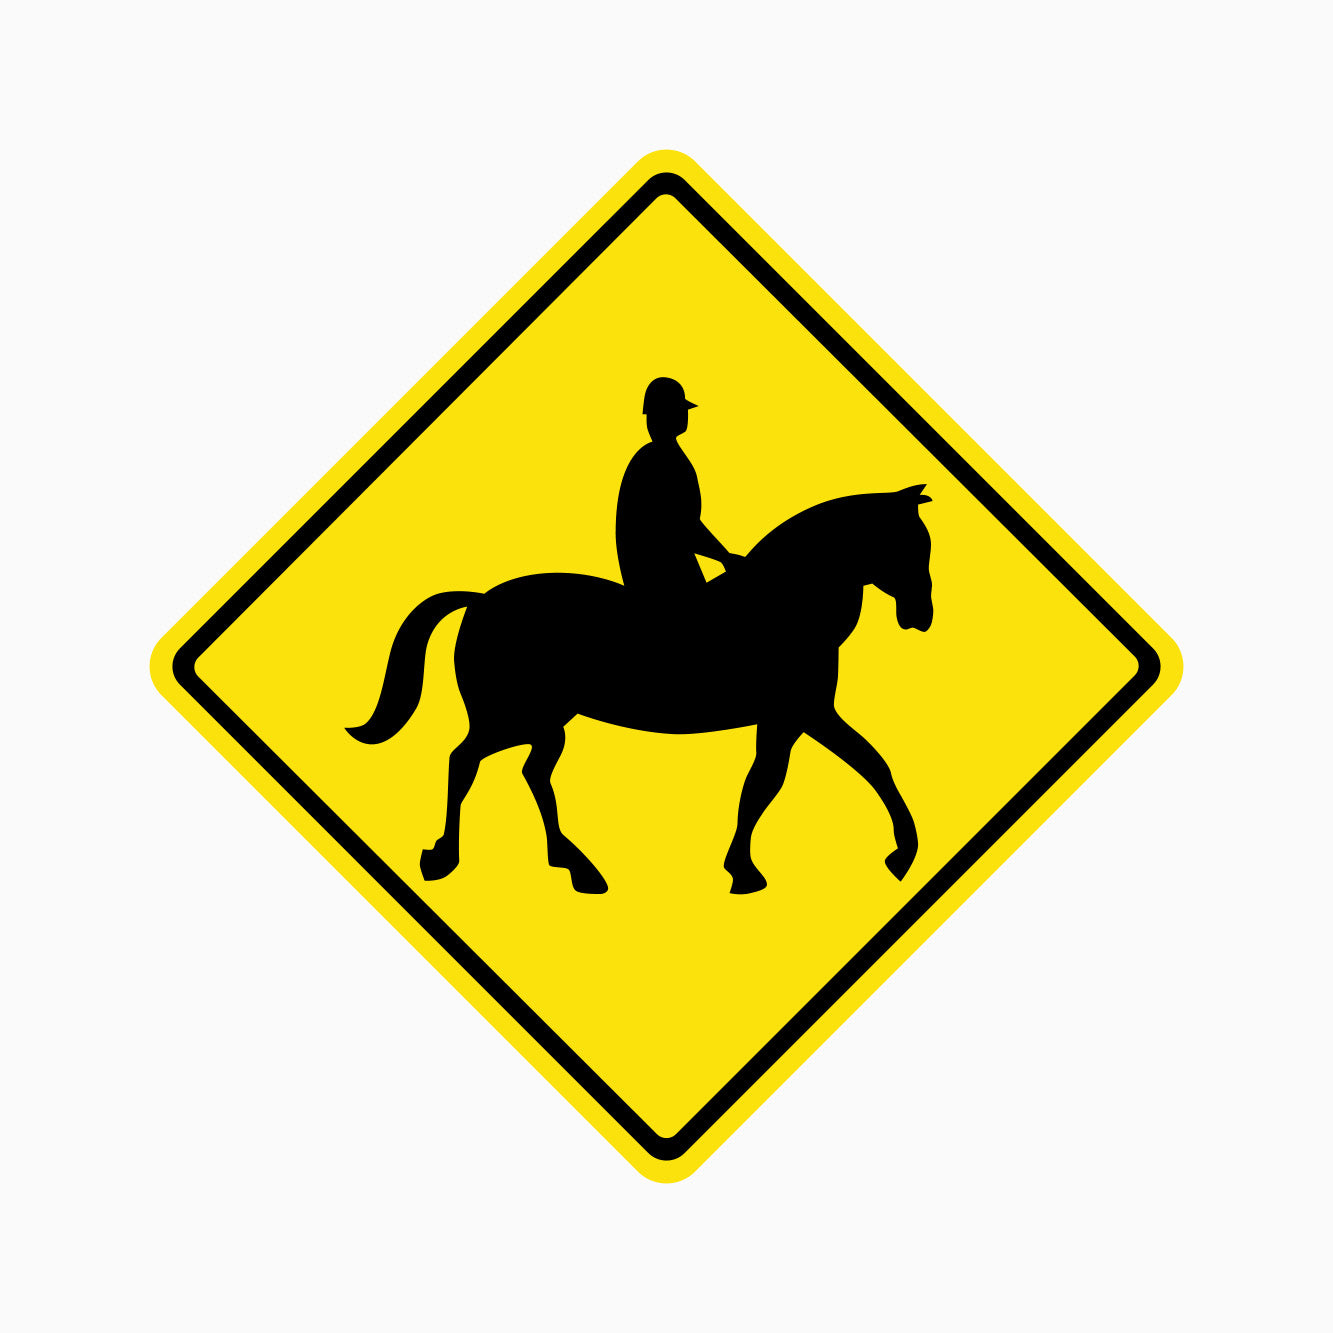 CAUTION HORSE RIDER SIGN